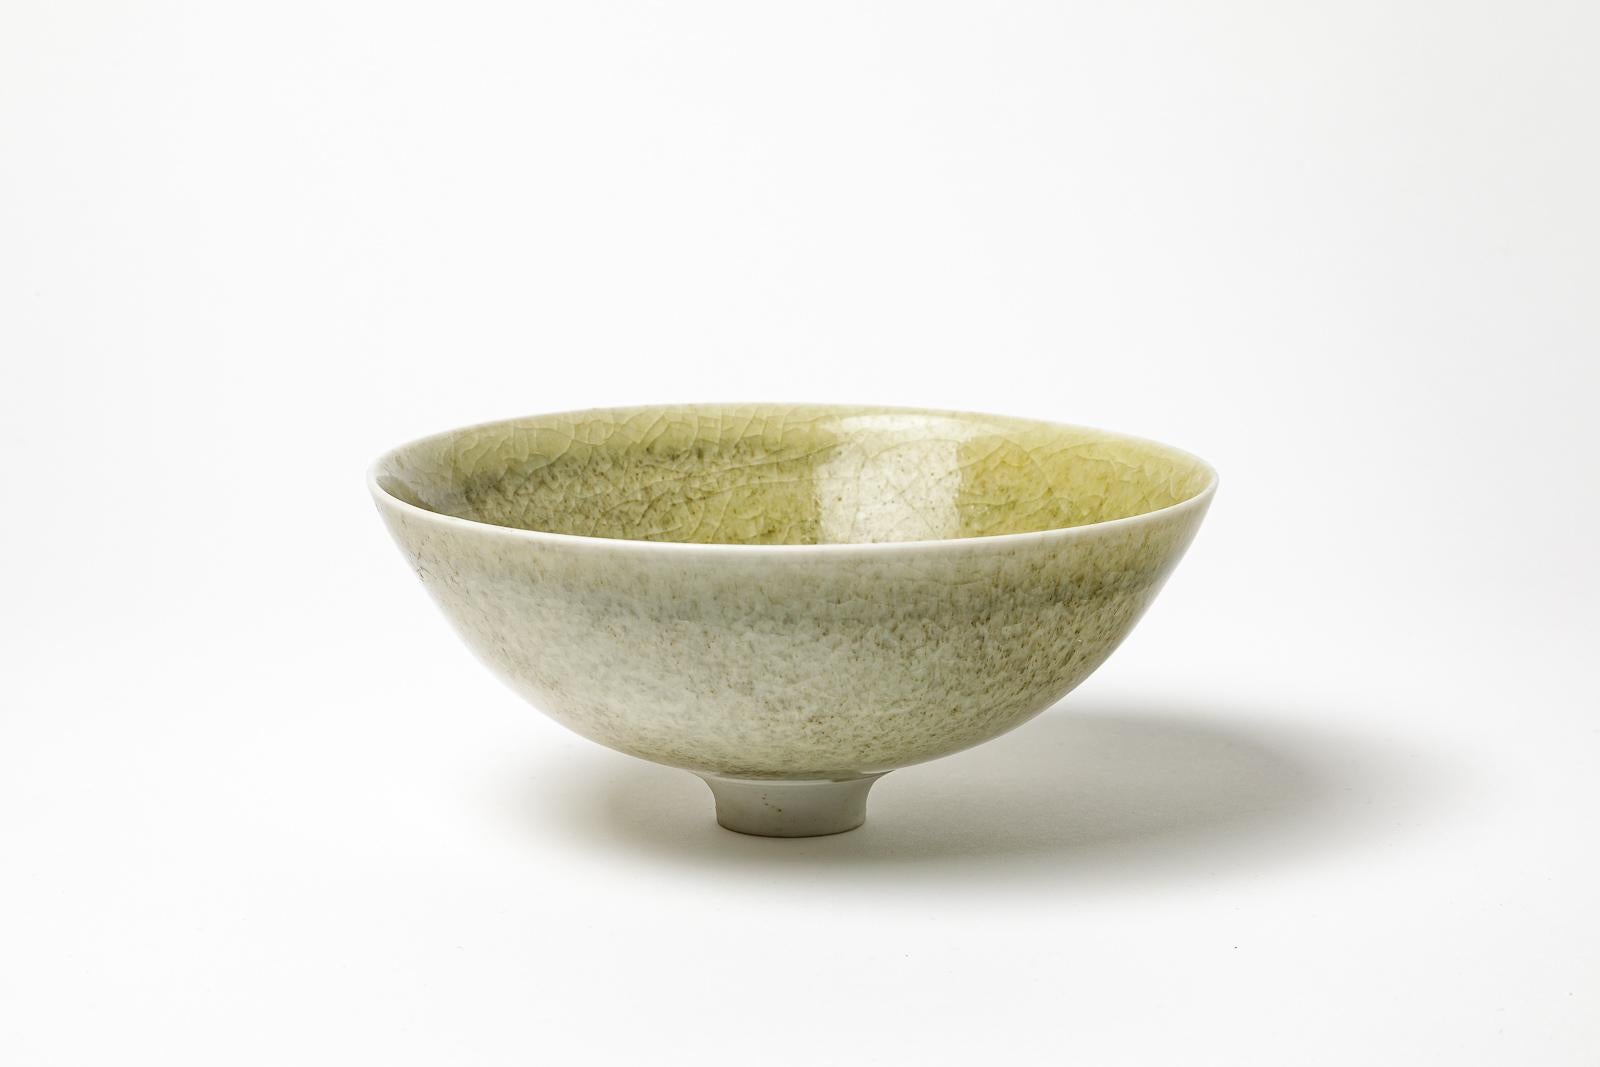 Jacques Buchholtz

Elegant porcelain ceramic cup or bowl

Signed under the base

Green celadon ceramic glaze color

height 7 cm

Large 17 cm.